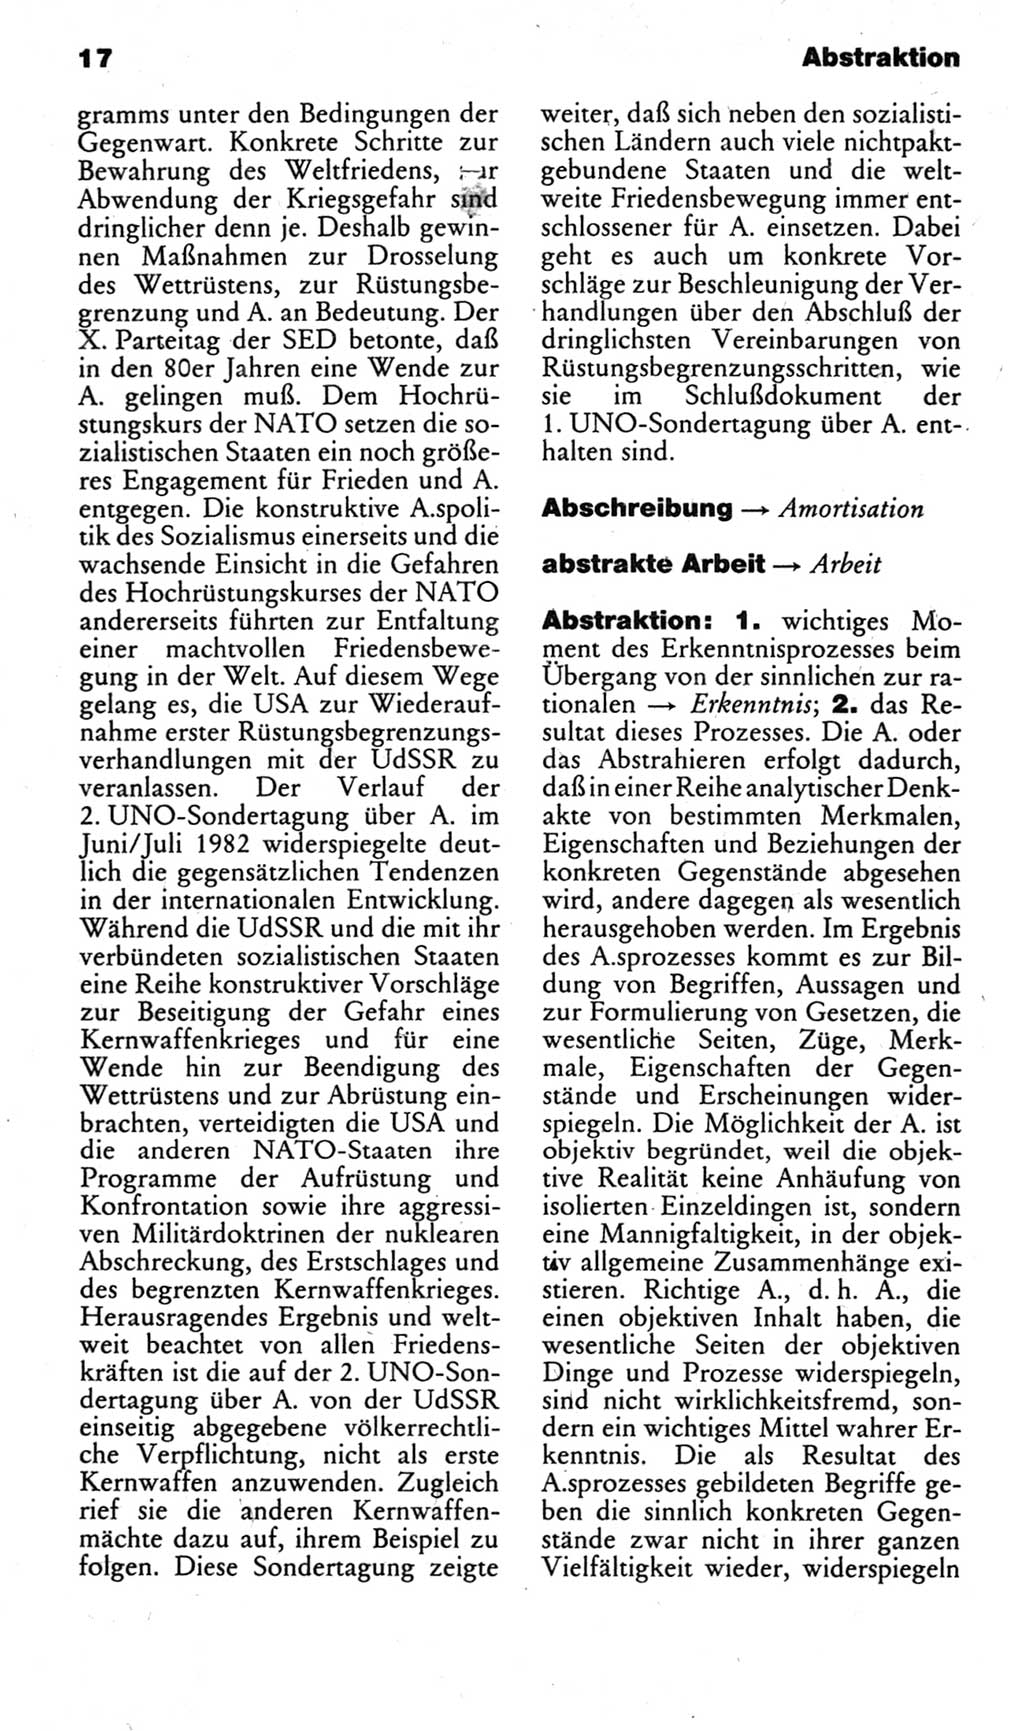 Kleines politisches Wörterbuch [Deutsche Demokratische Republik (DDR)] 1983, Seite 17 (Kl. pol. Wb. DDR 1983, S. 17)